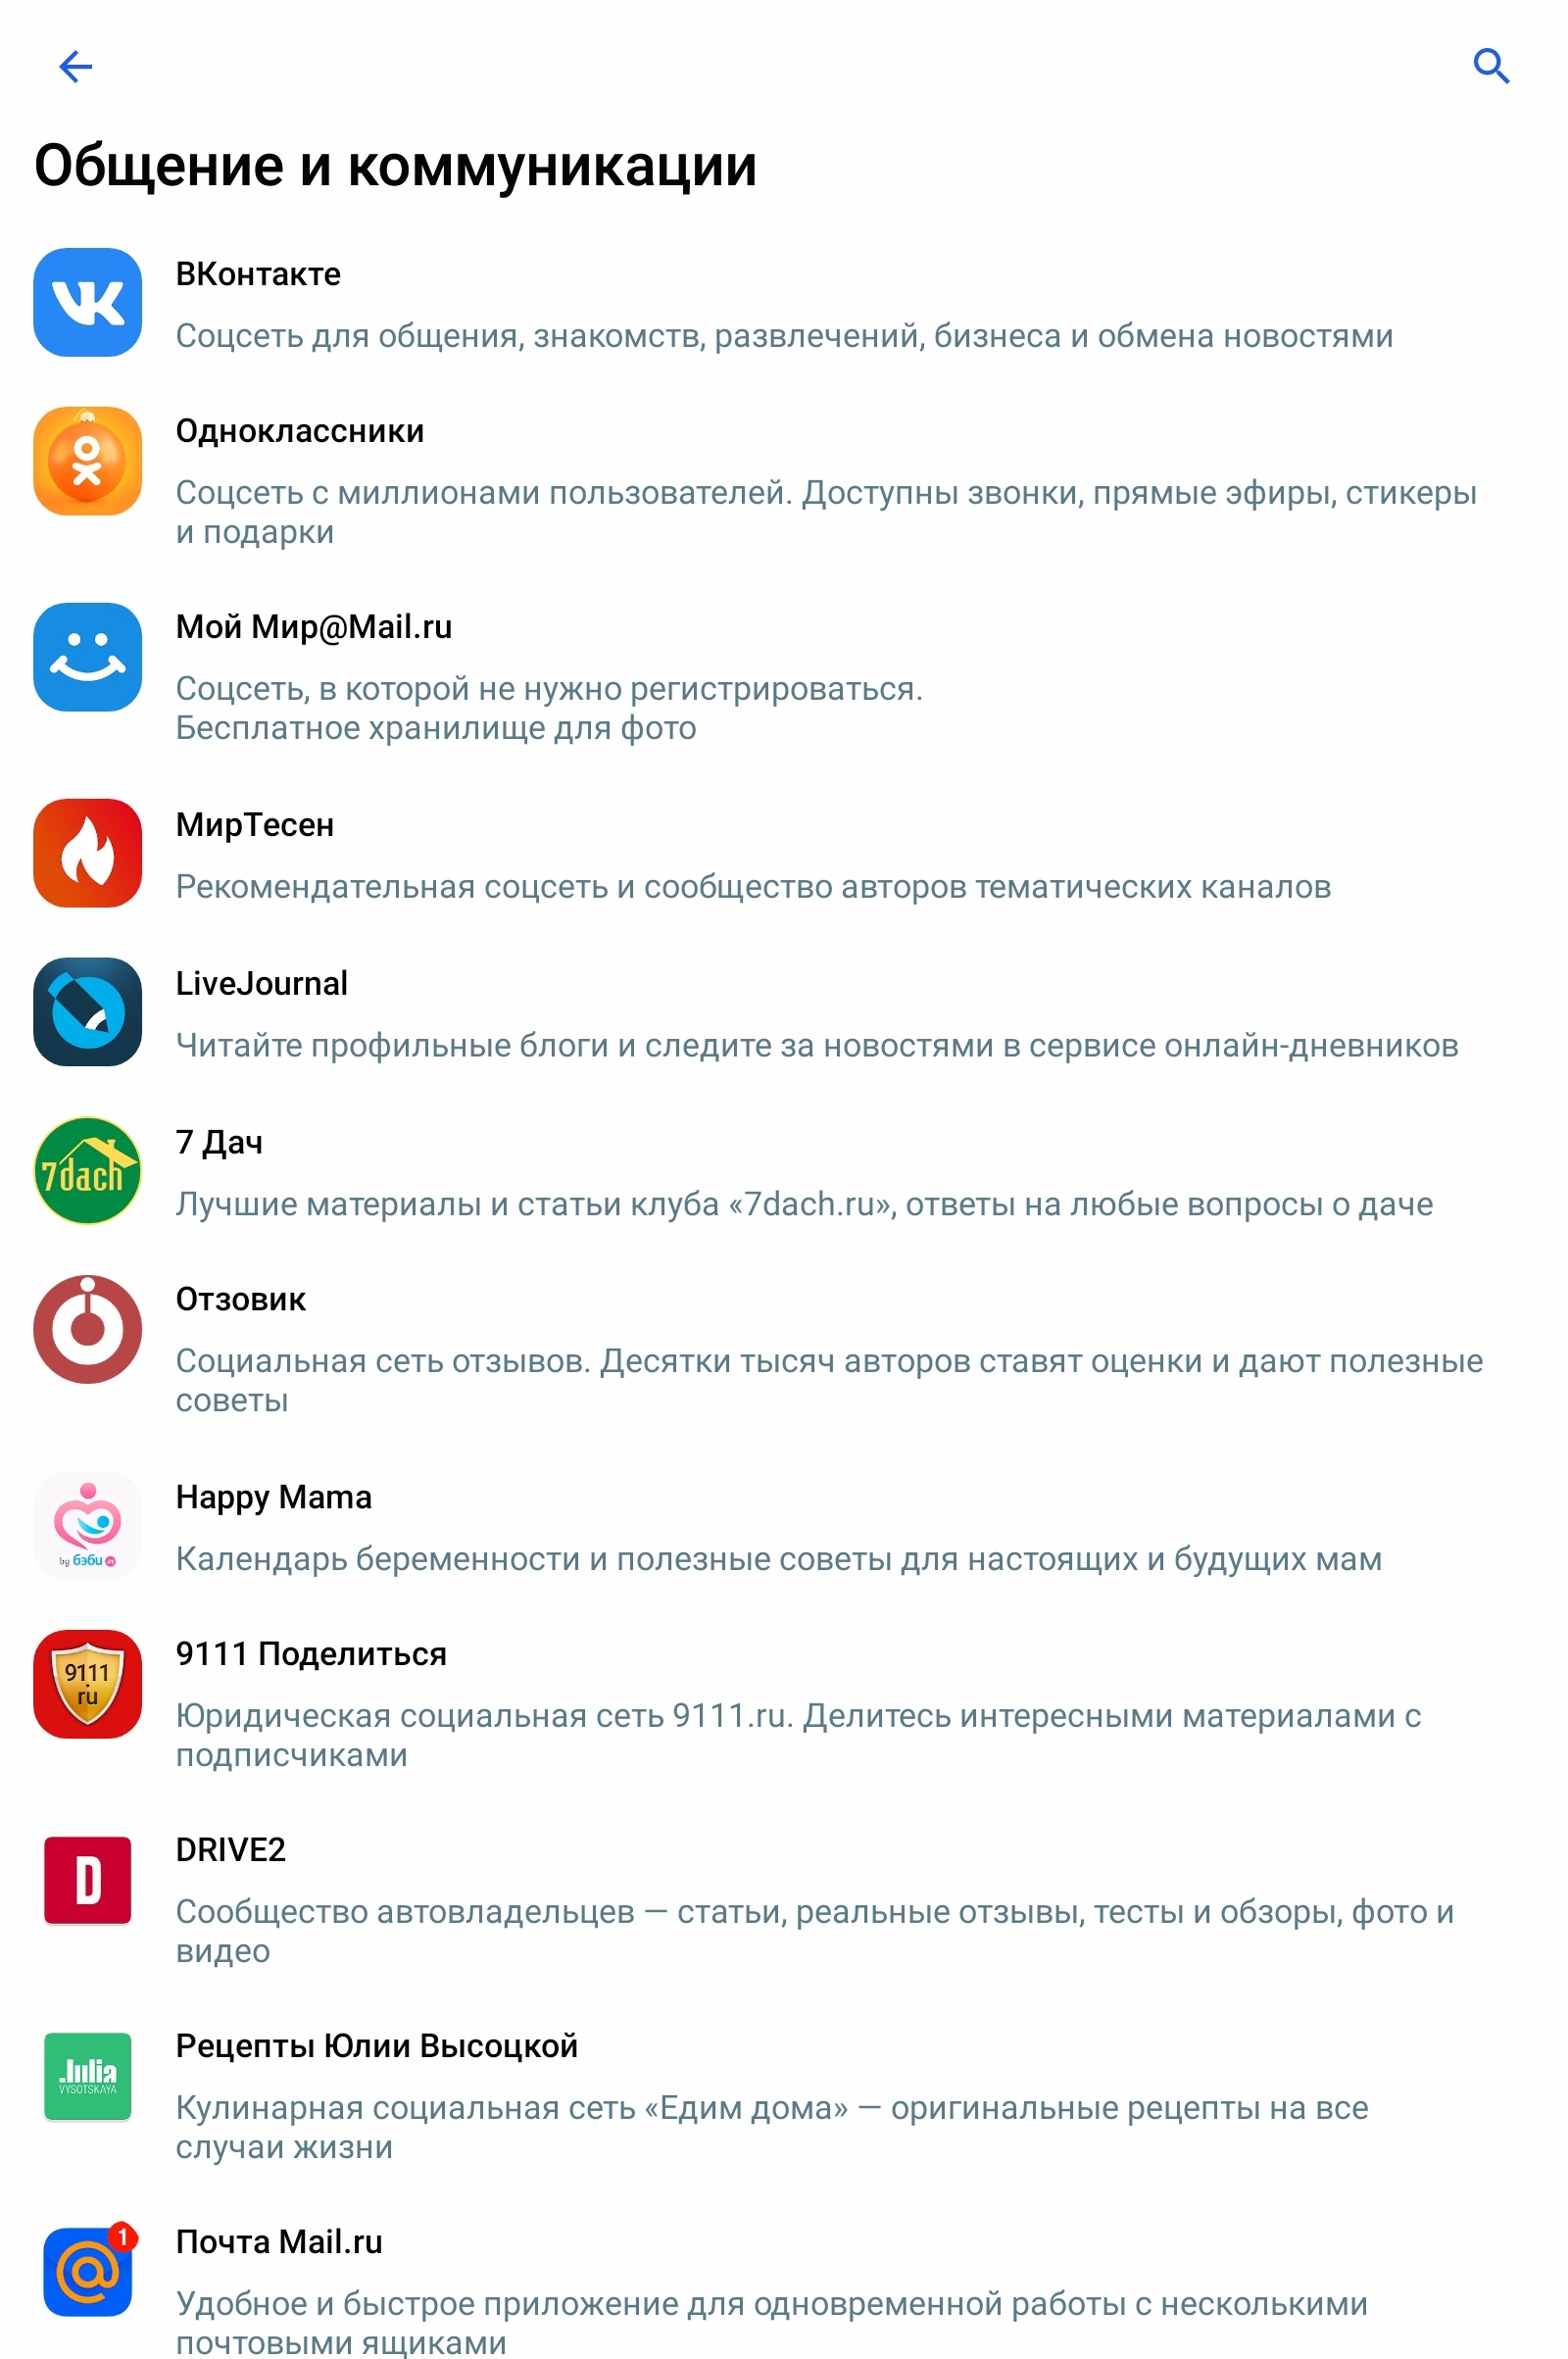 Как именно выглядит предустановка российского ПО на мобильные устройства - 16